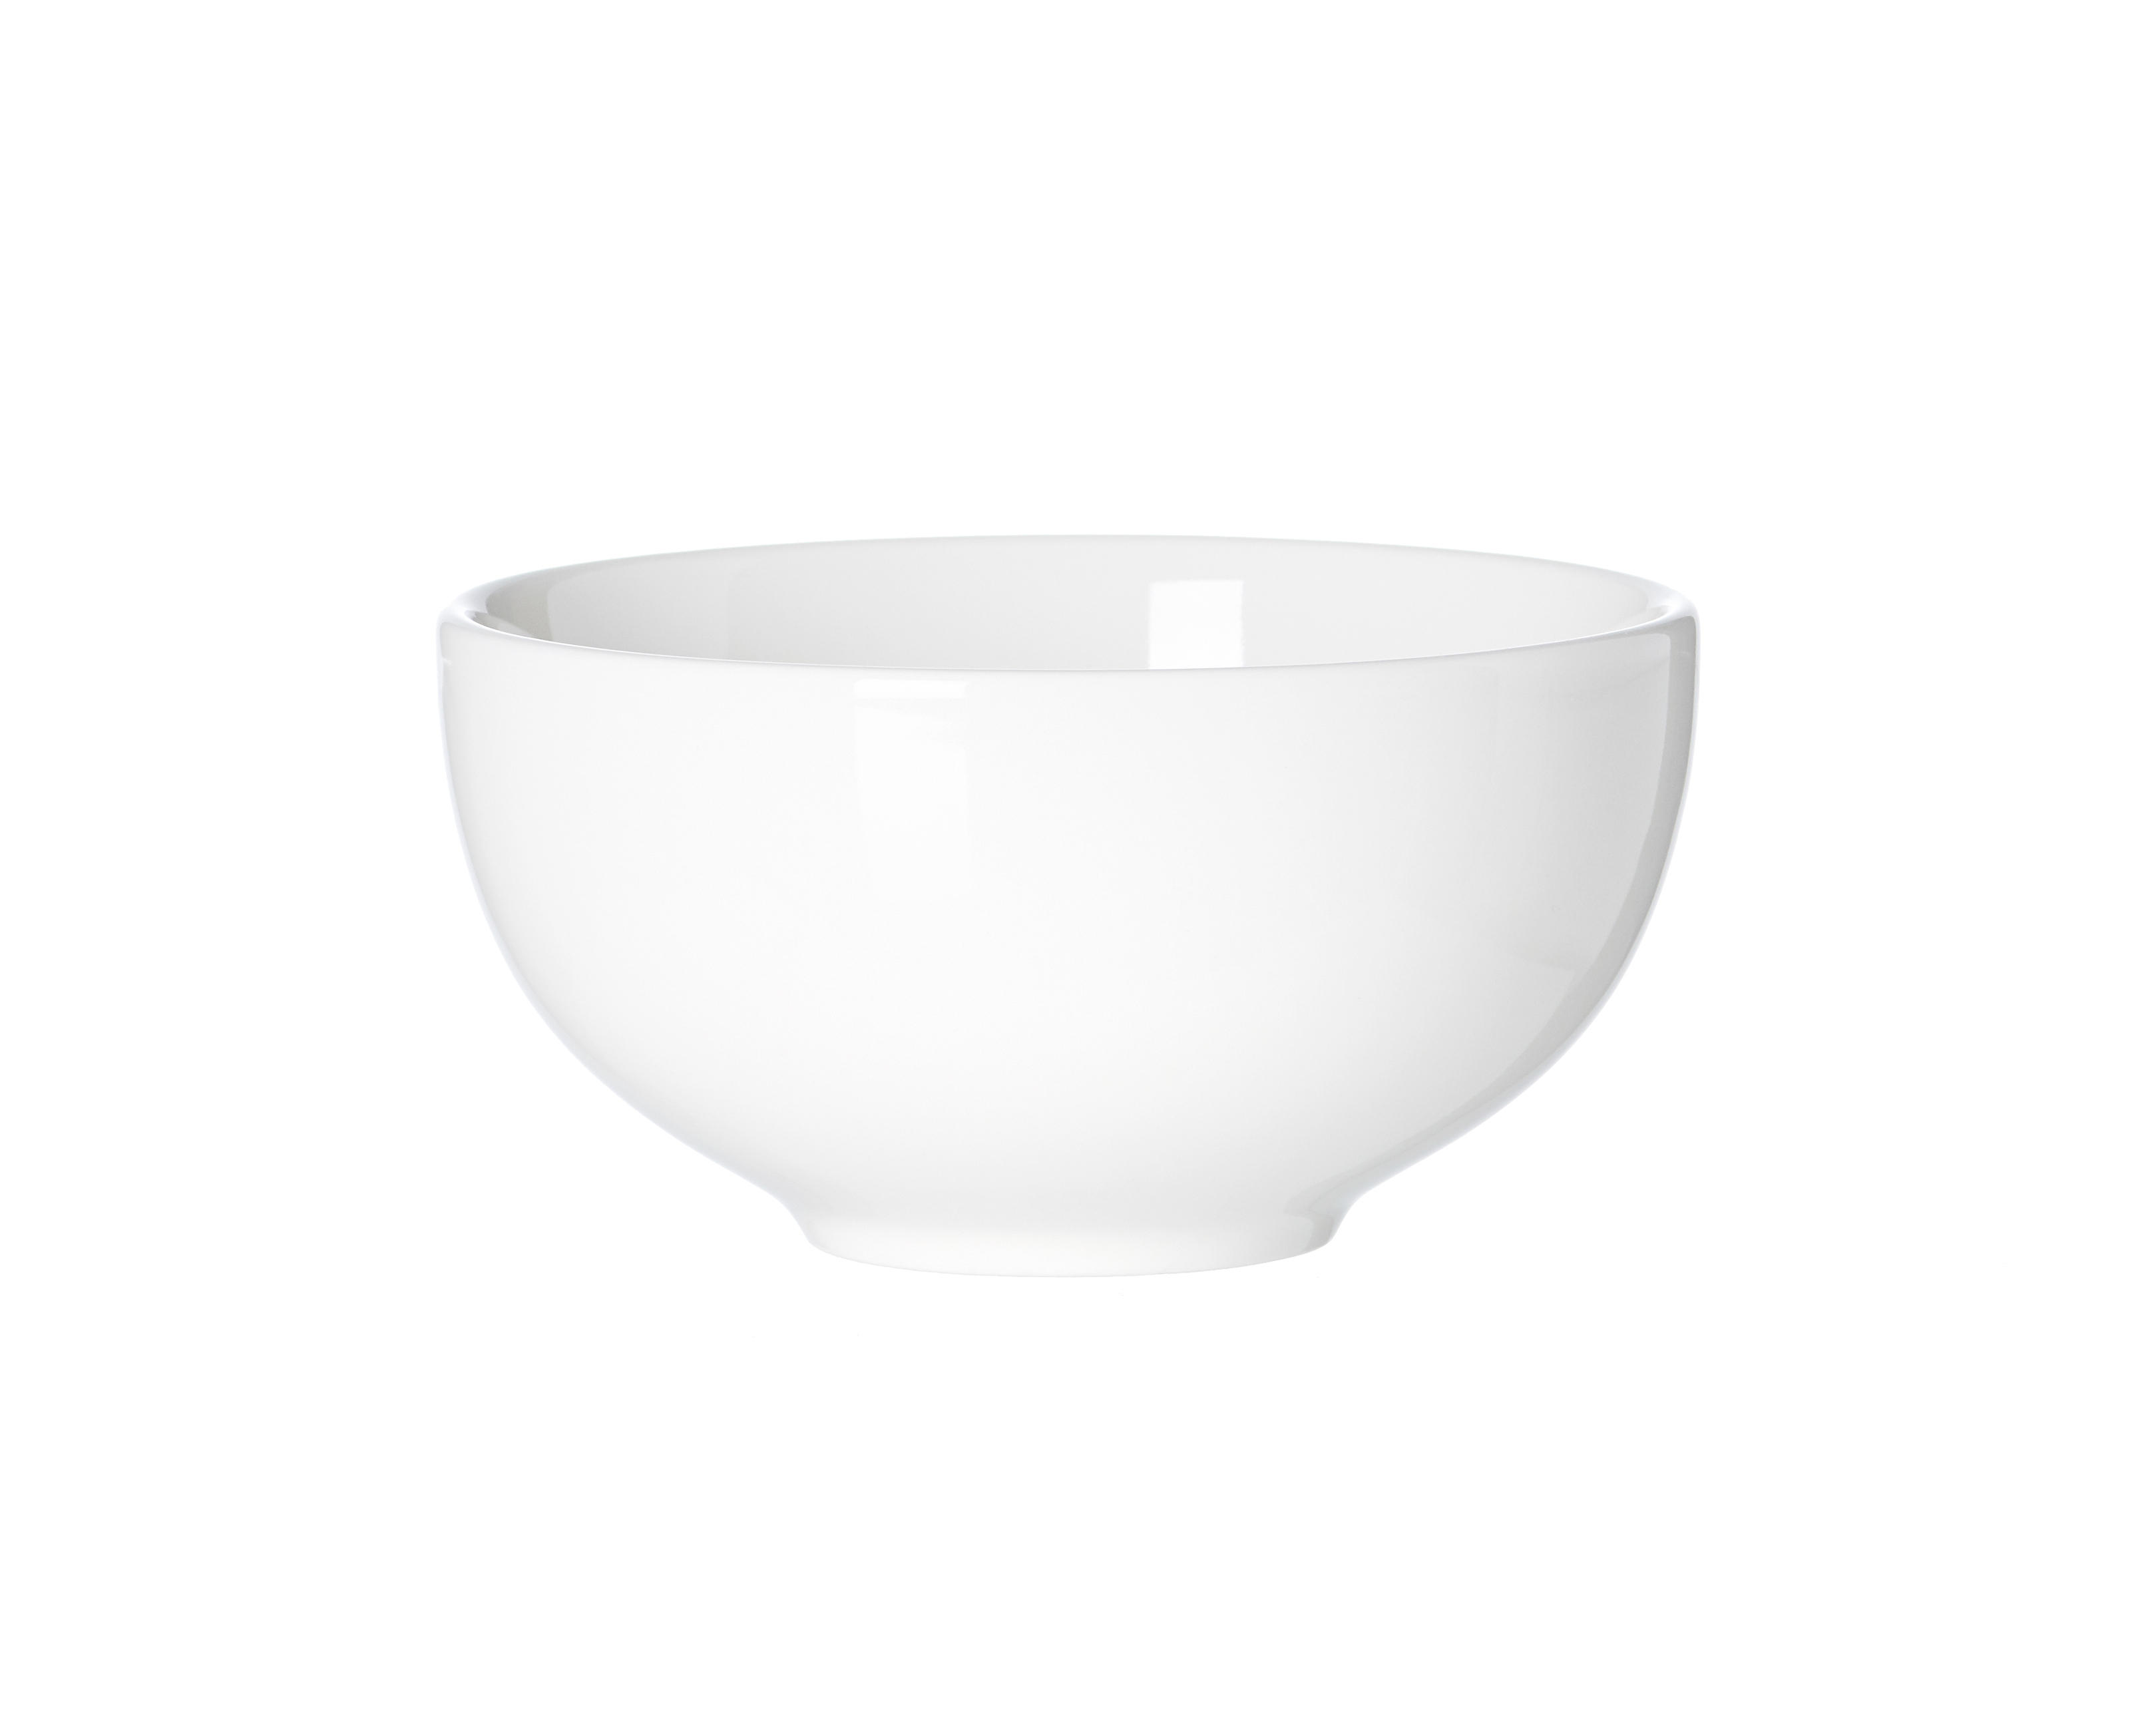 SCHALE Keramik Porzellan  - Weiß, Design, Keramik (15/15/7cm) - Ritzenhoff Breker